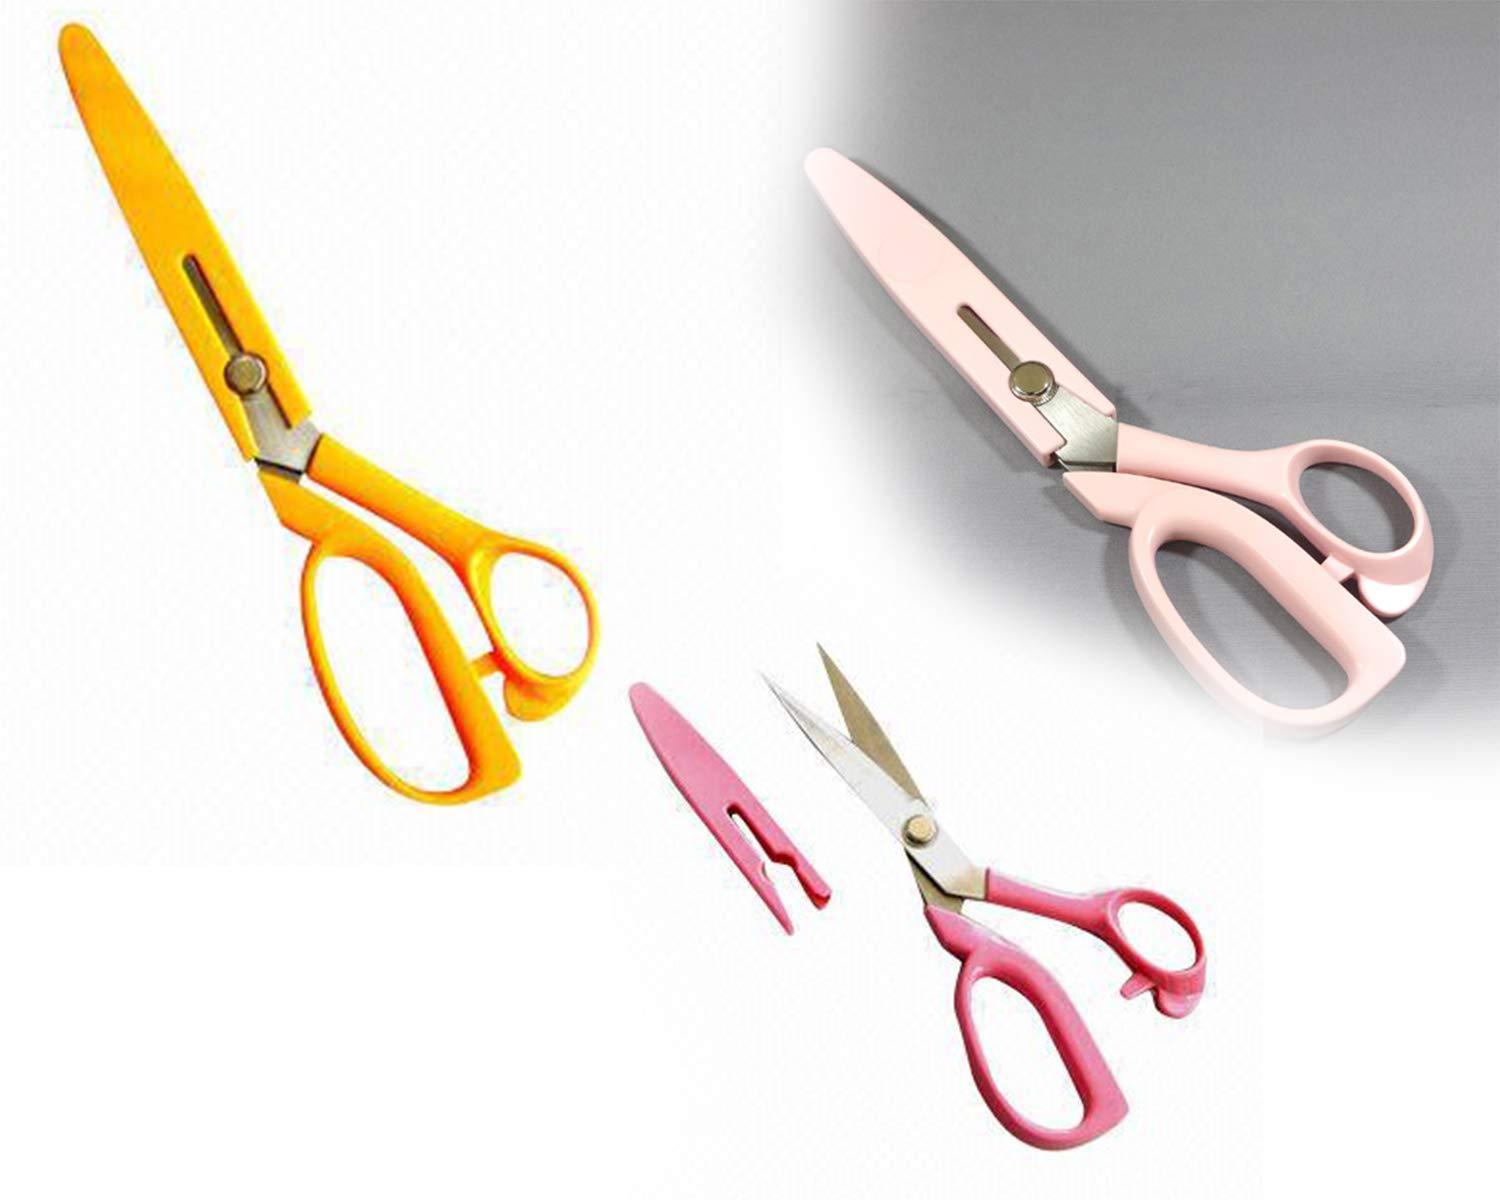 carbo-titanium-stainless-steel-scissors-105-inch